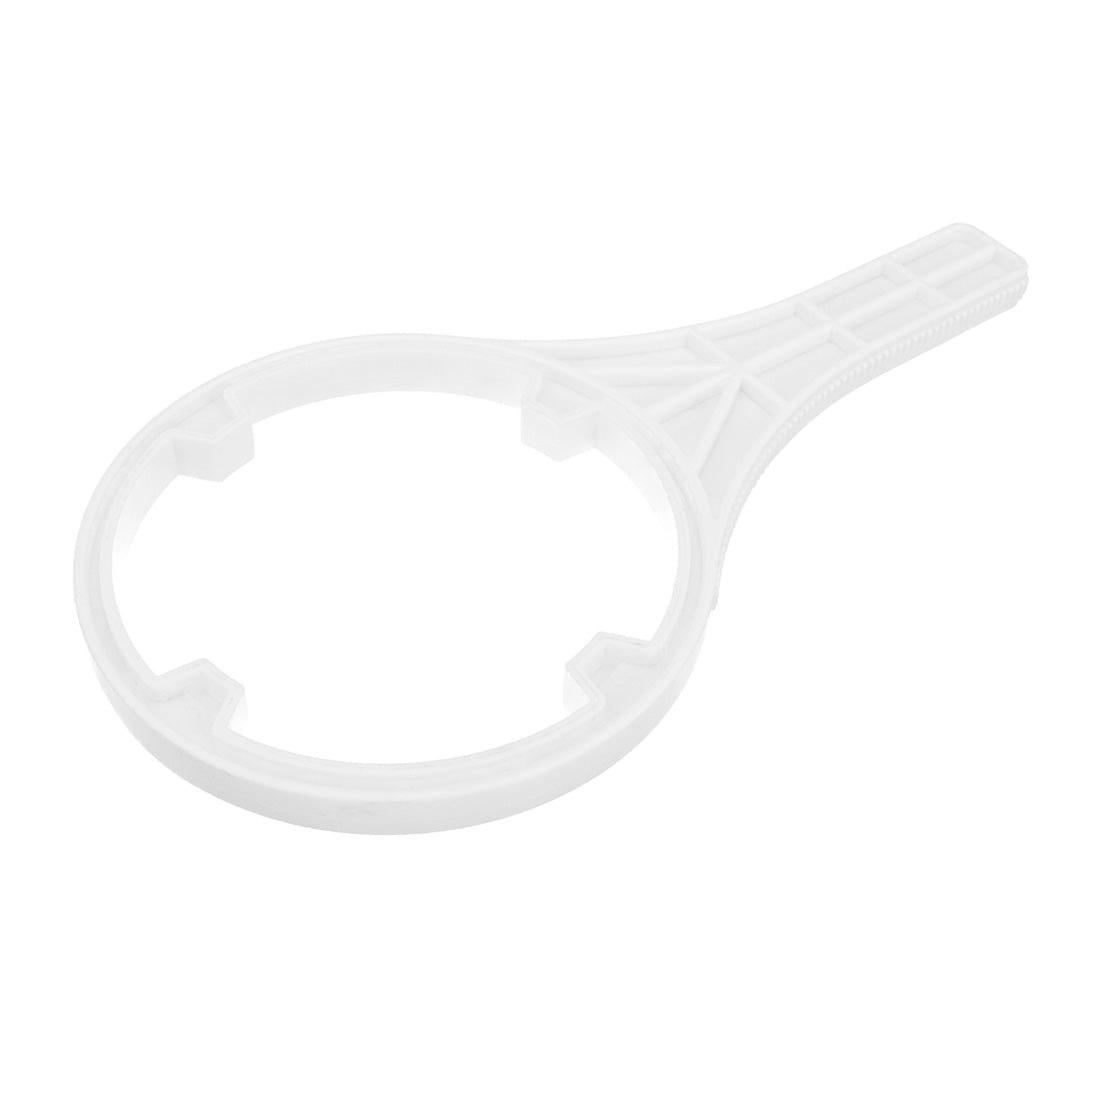 XERO Filter Wrench - Small - Head Oblique View